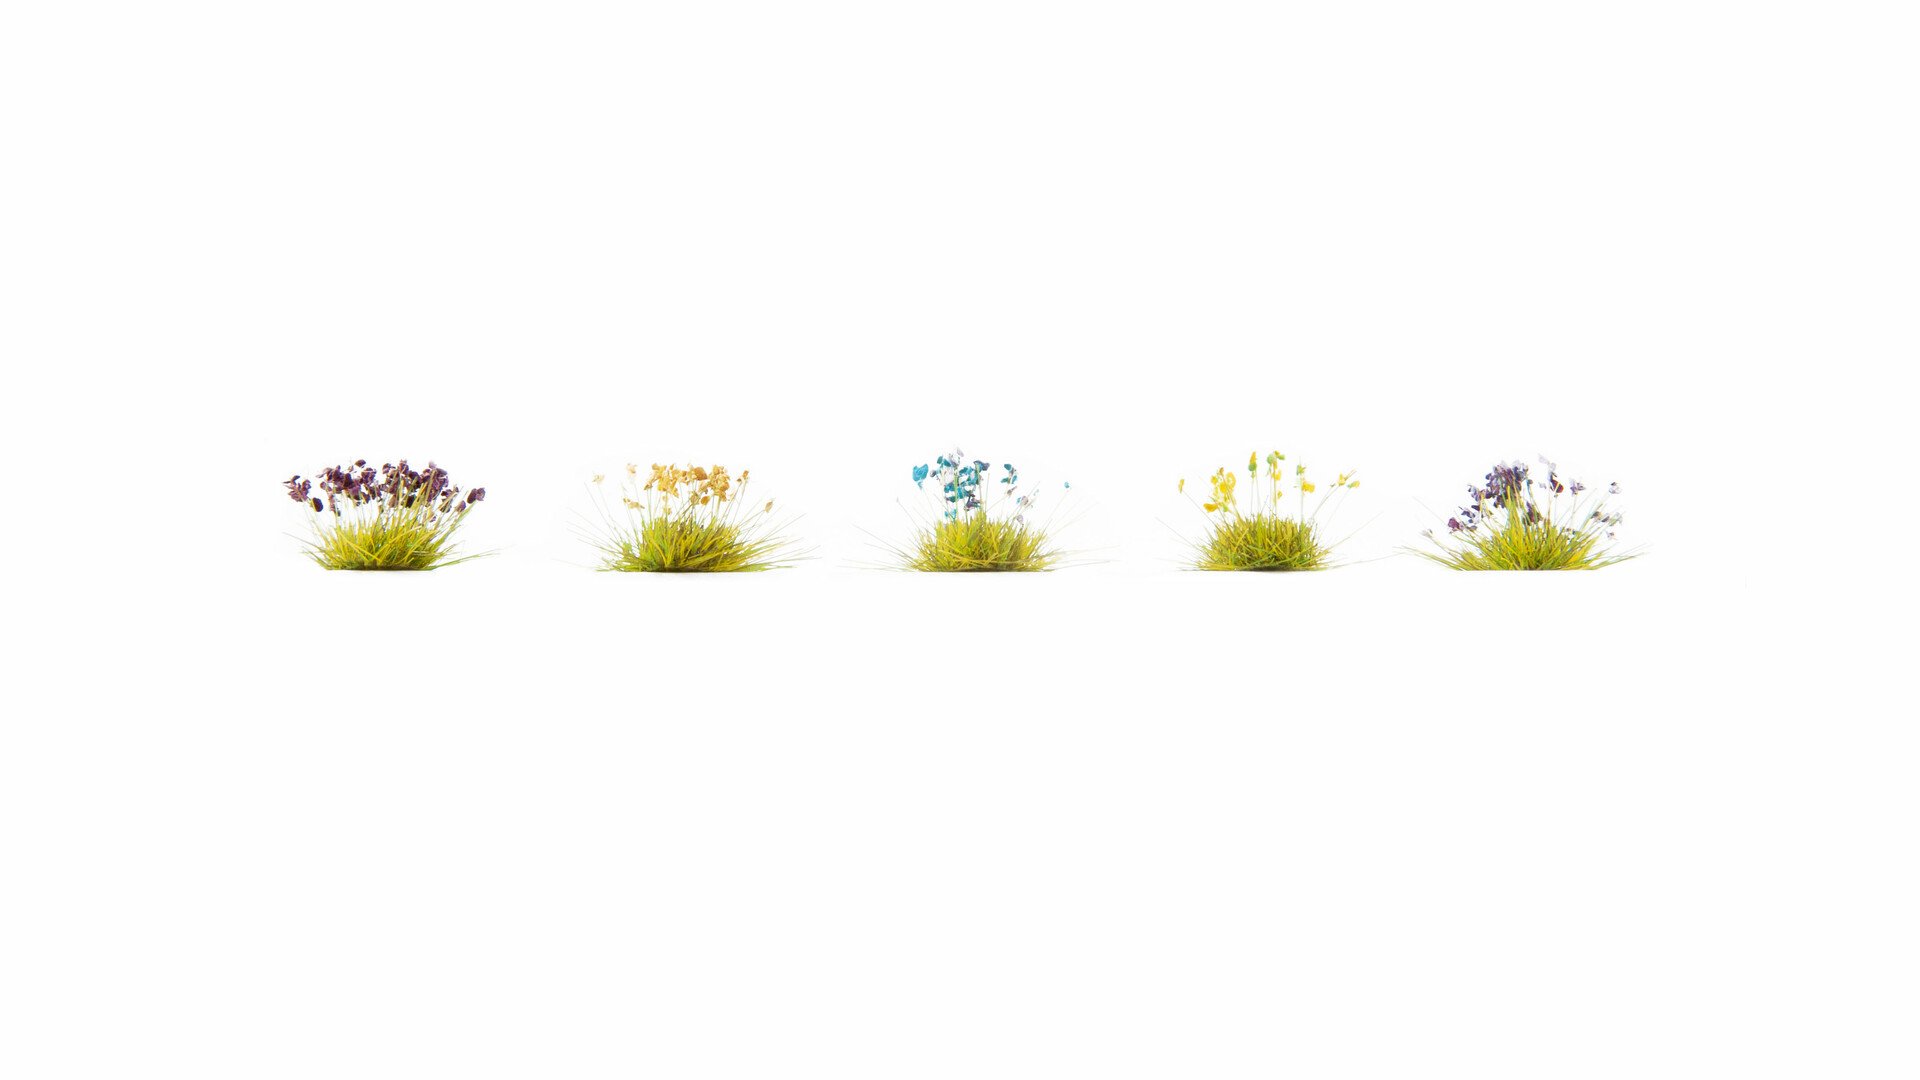 Blumen, grün-gelb, blau-weiß, Heide, Korn, Lavendel